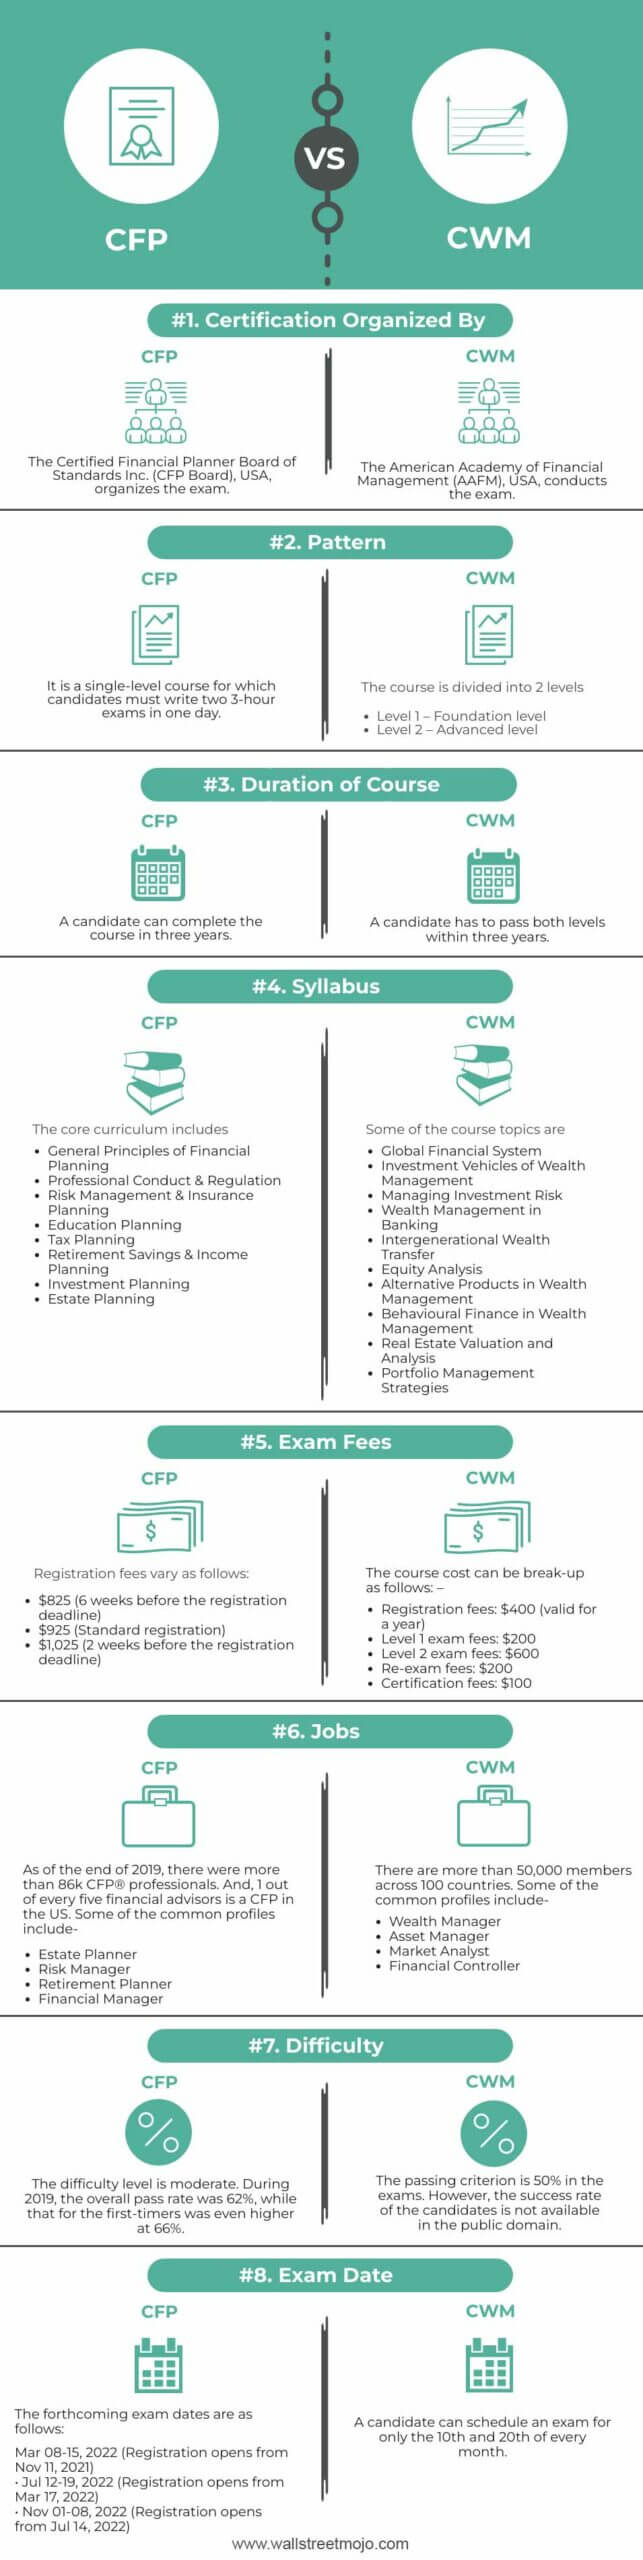 CFP-vs-CWM-info